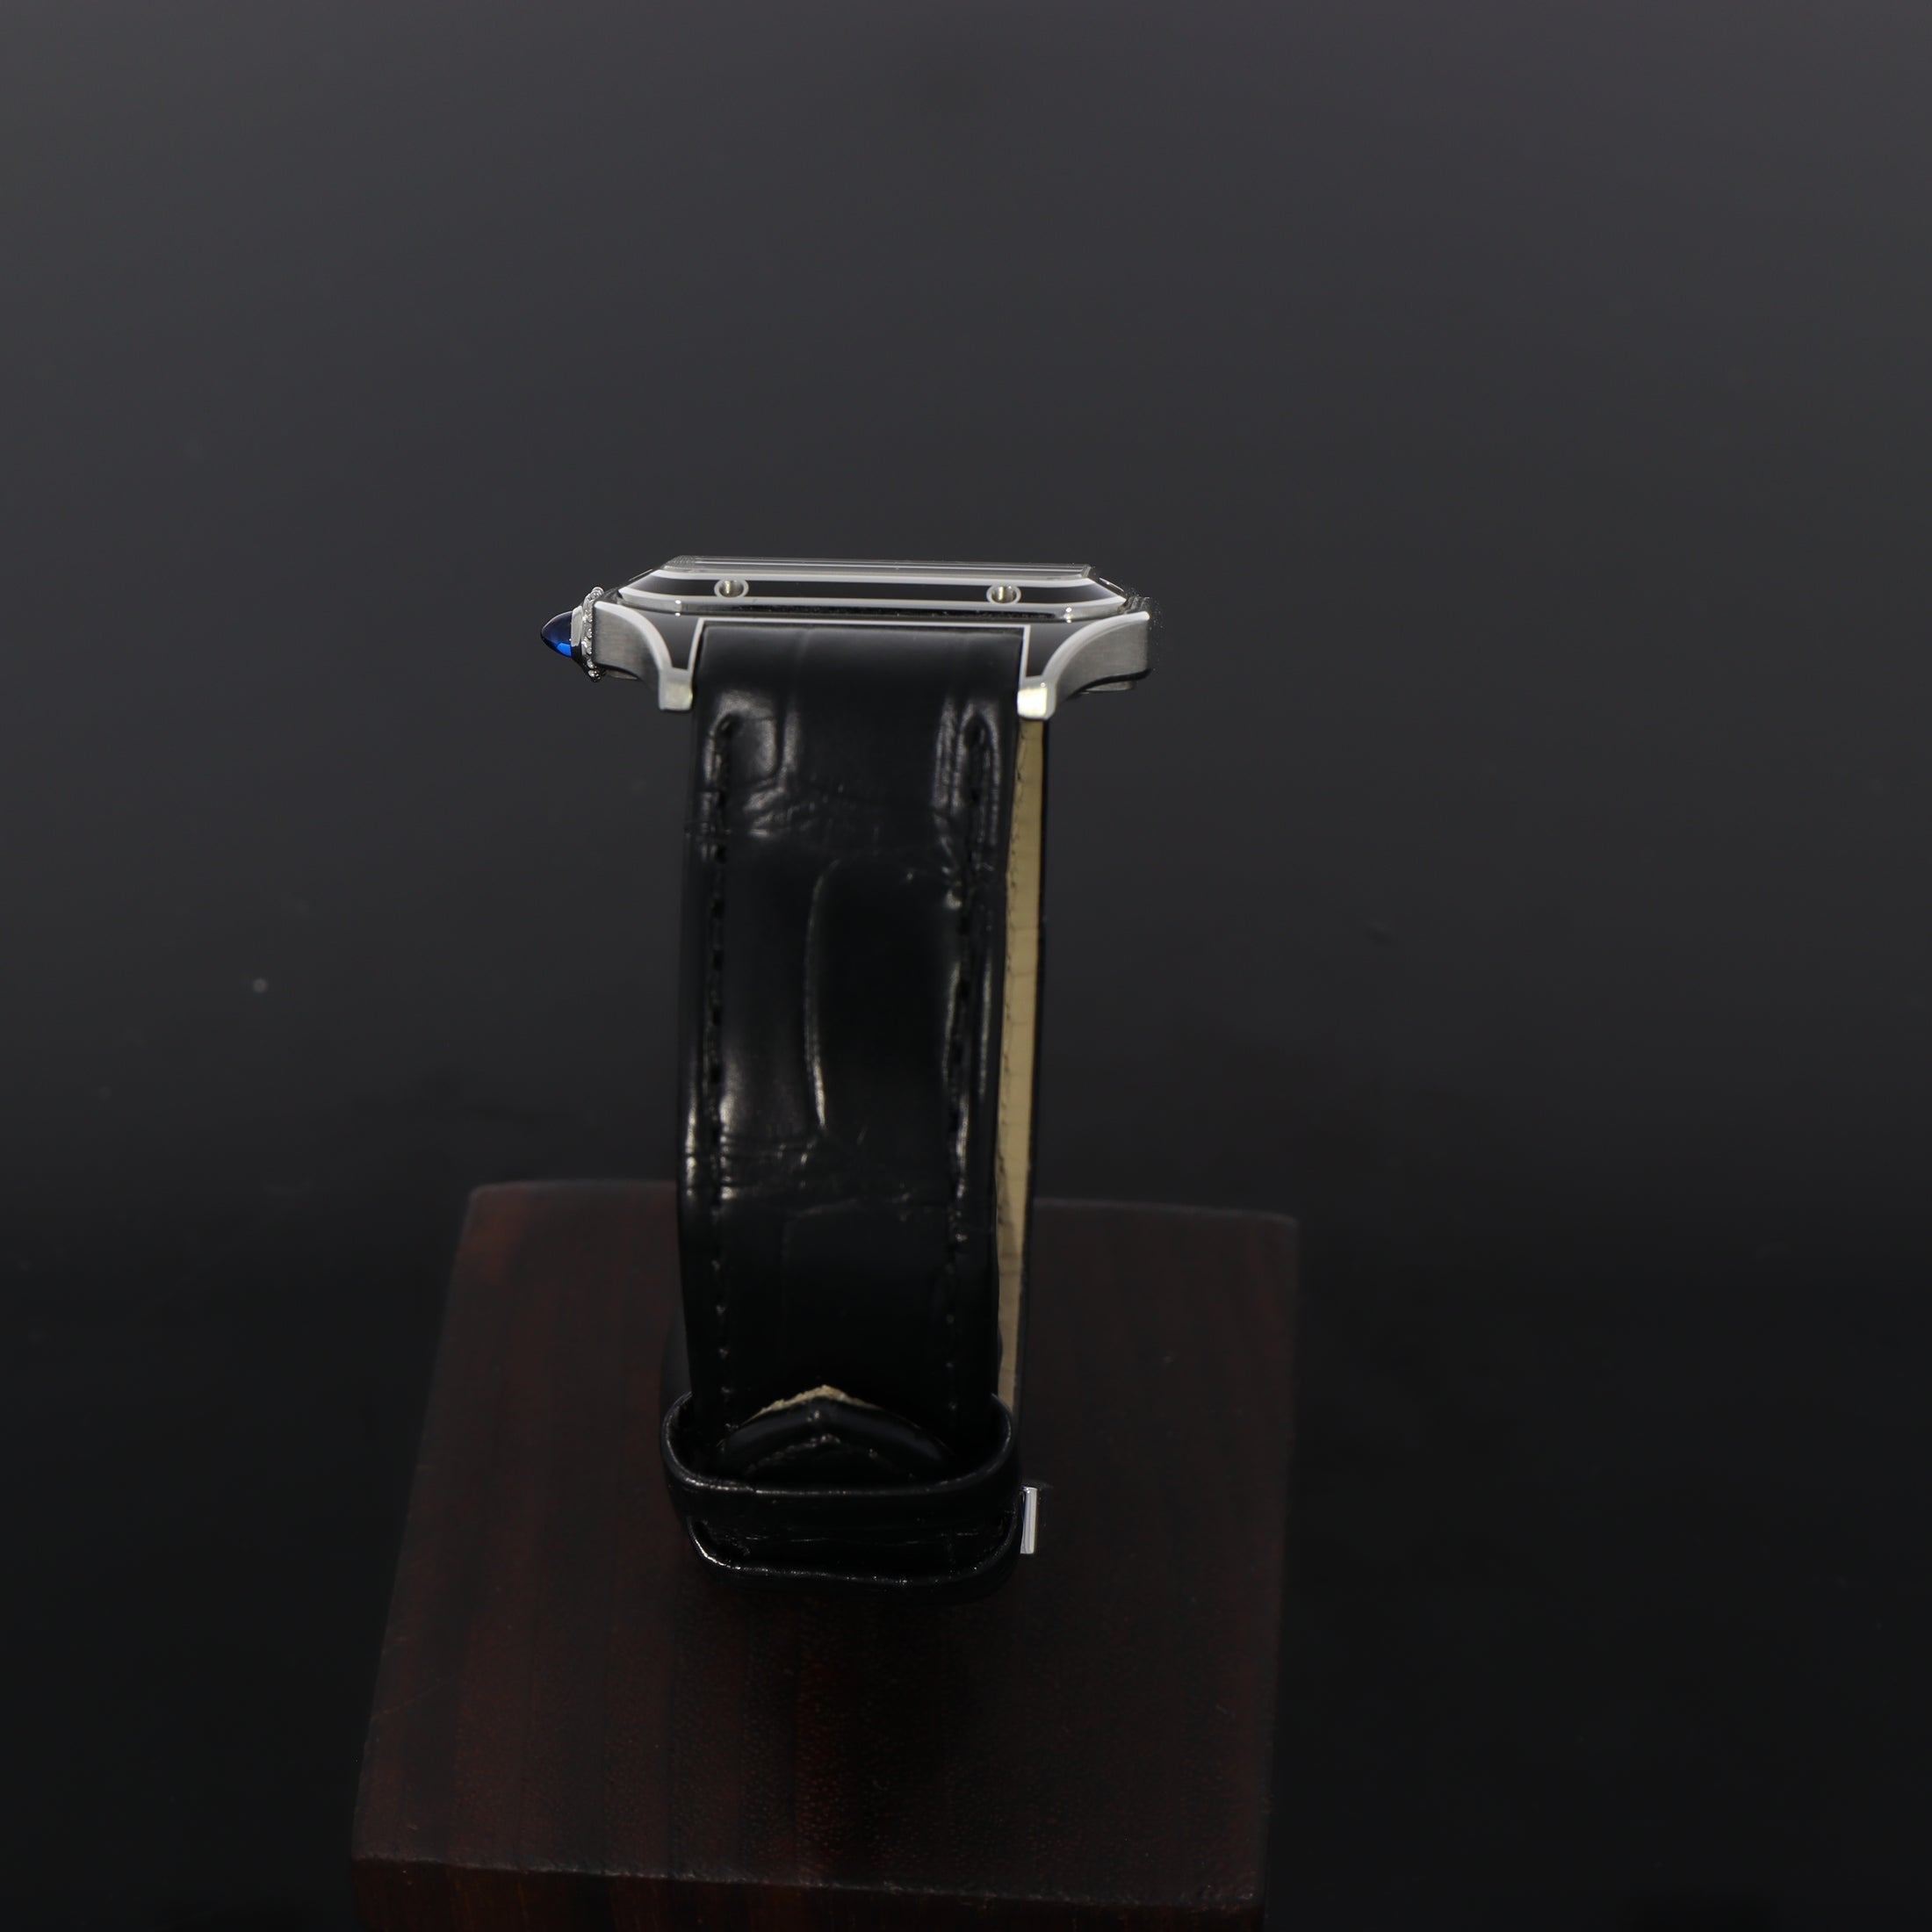 Cartier Santos Dumont WSSA0046 Black Lacquer Box + Papiere TOP ZUSTAND